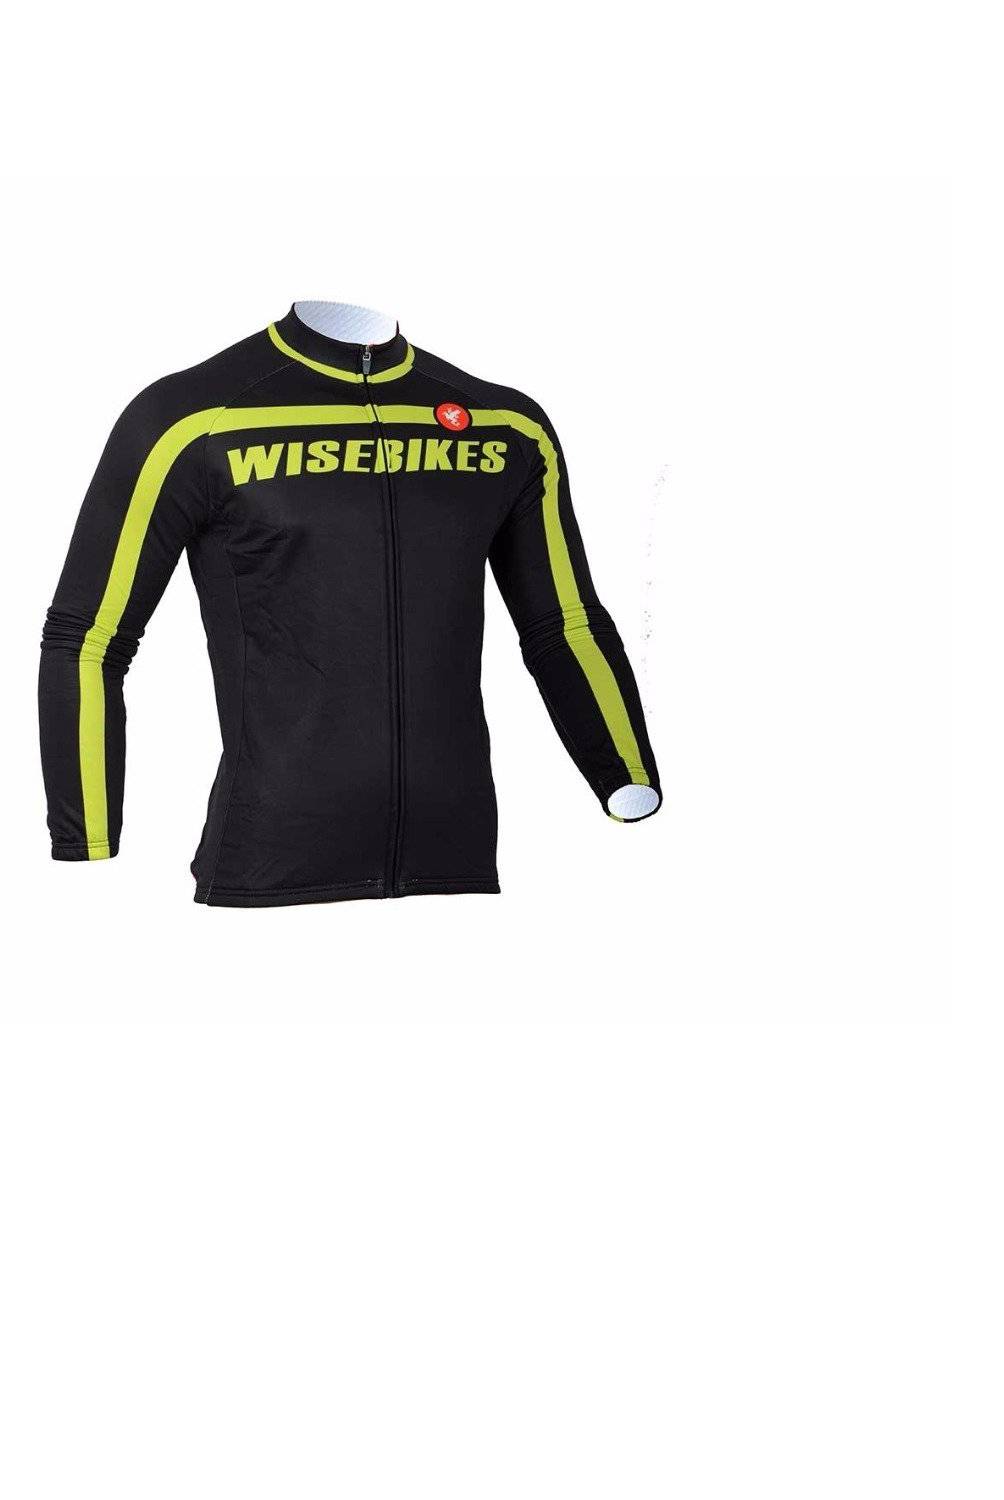 WISEBIKES - Chaquetilla Térmica de Ciclismo Black